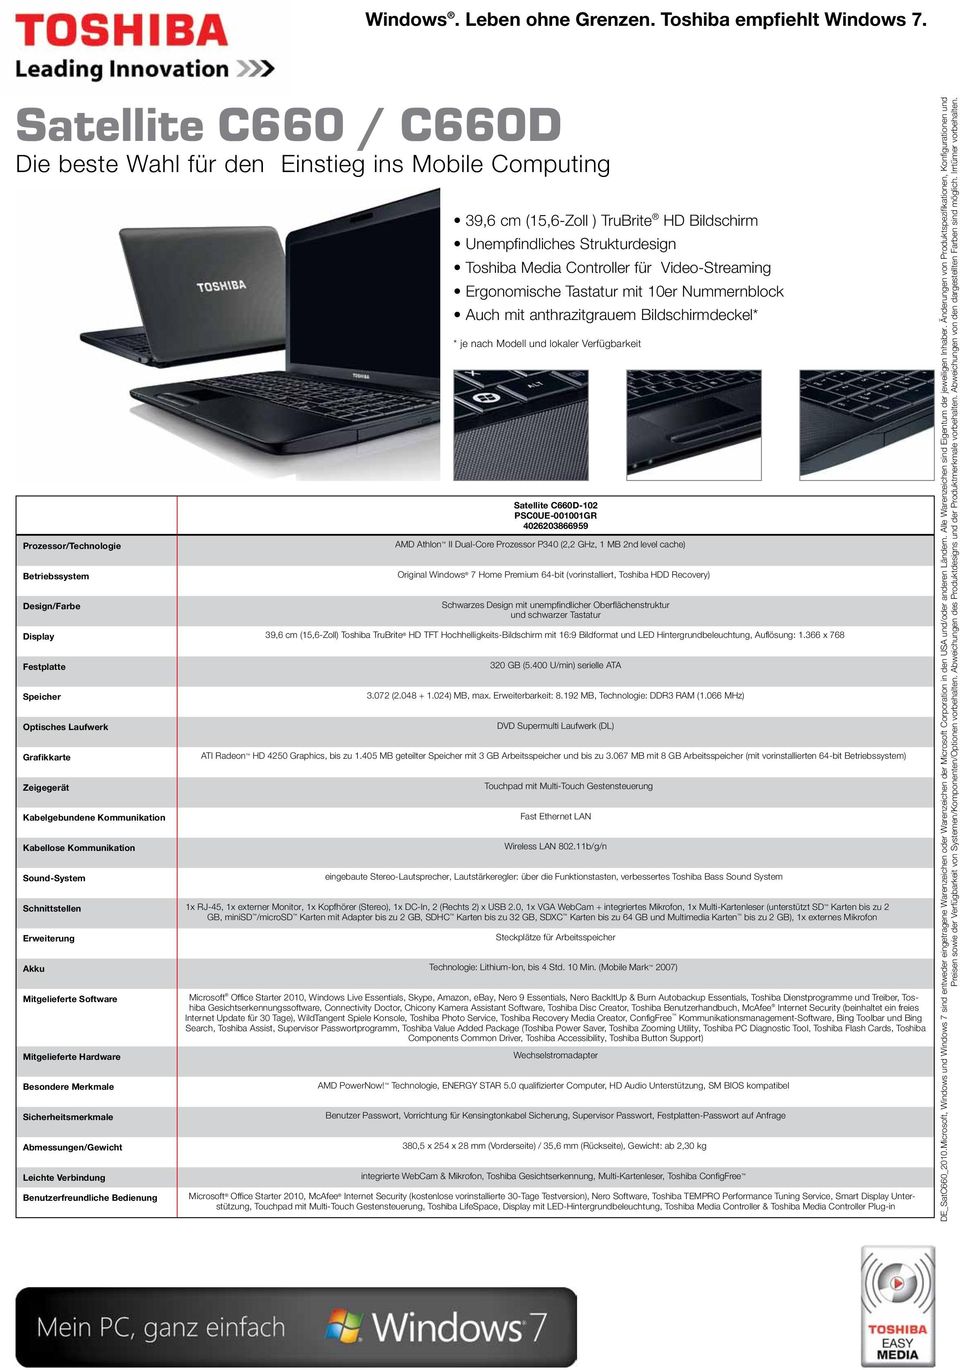 level cache) Schwarzes Design mit unempfindlicher Oberflächenstruktur und schwarzer Tastatur Display 39,6 cm (15,6-Zoll) Toshiba TruBrite HD TFT Hochhelligkeits-Bildschirm mit 16:9 Bildformat und LED